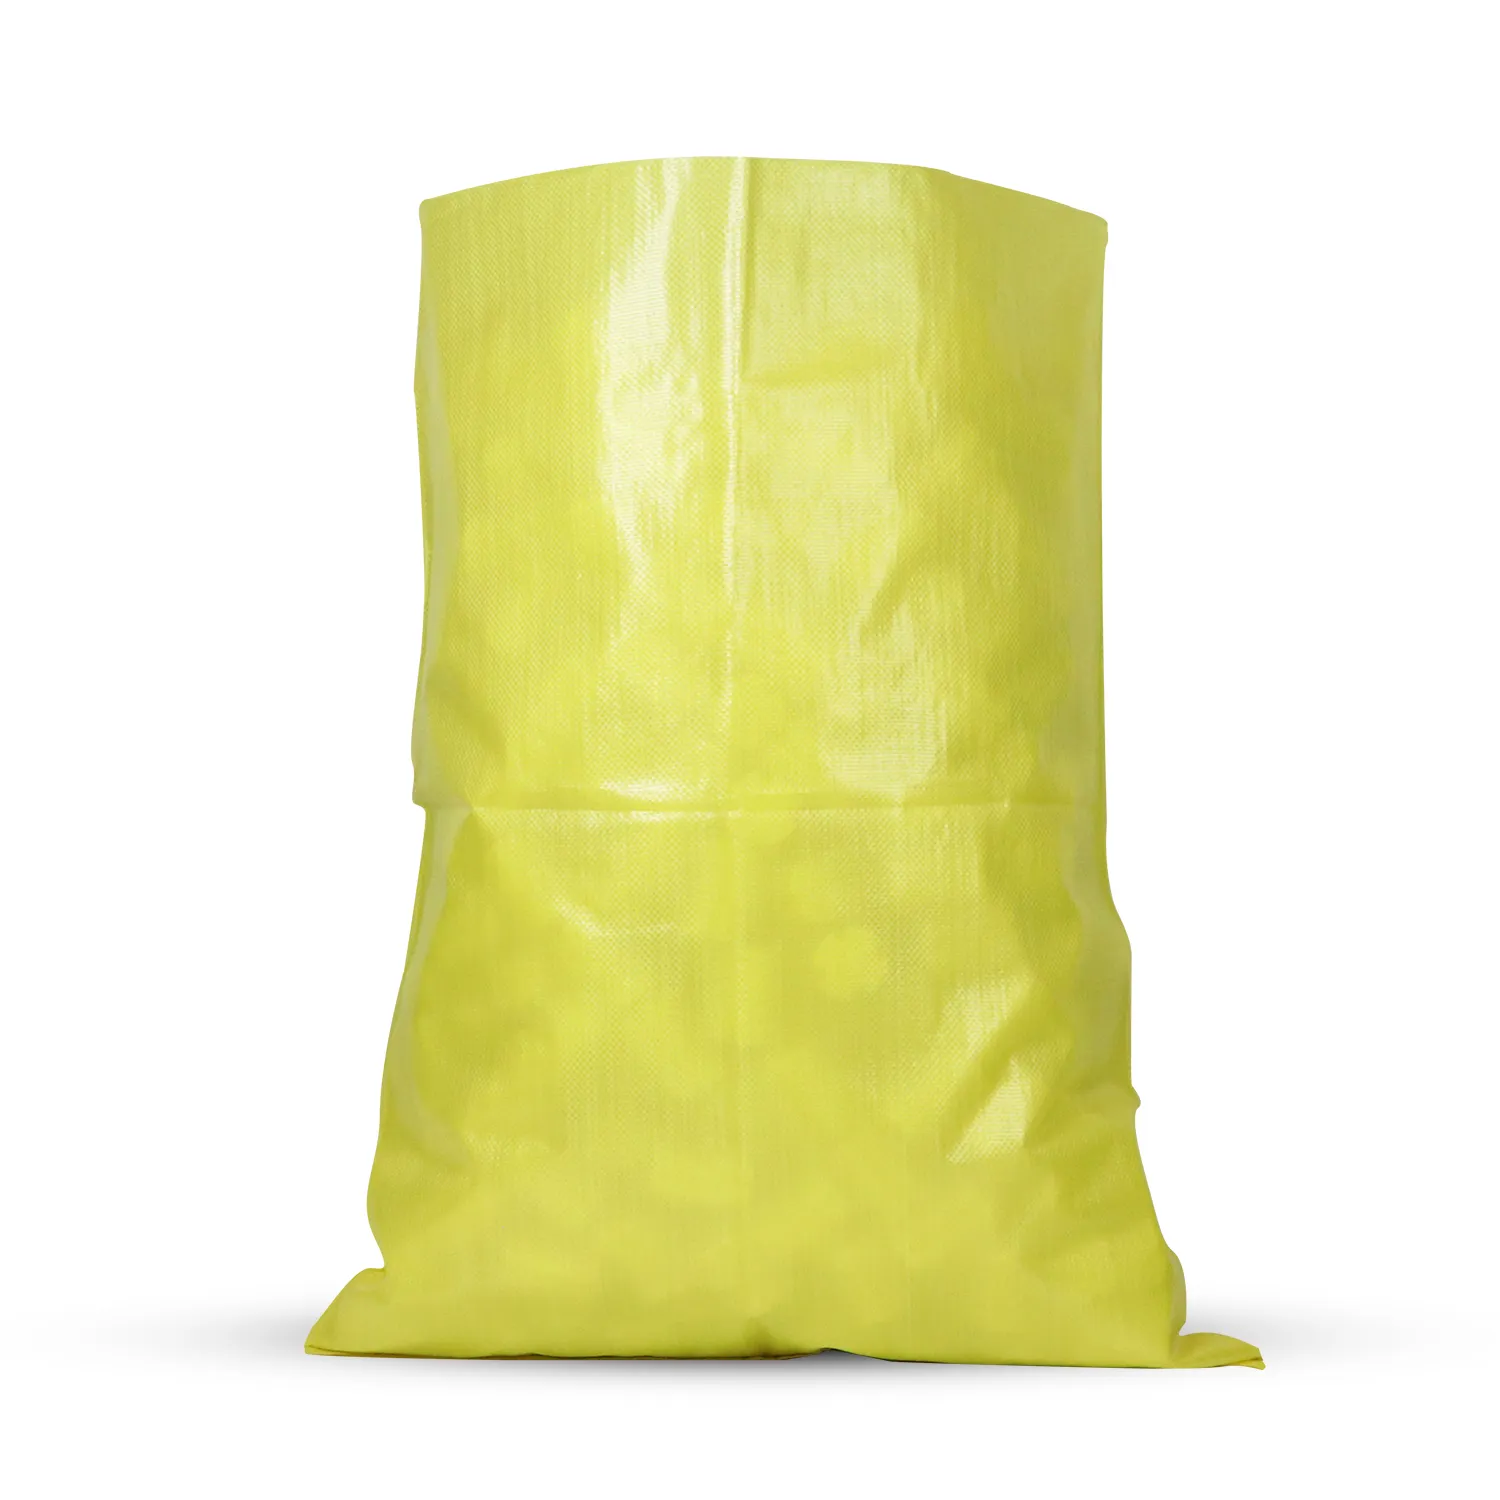 Hersteller 100% Virgin Colour ful Small Sacks 25kg 50kg Polypropylen Sack Gelb PP Woven Bag Sack für den Bau